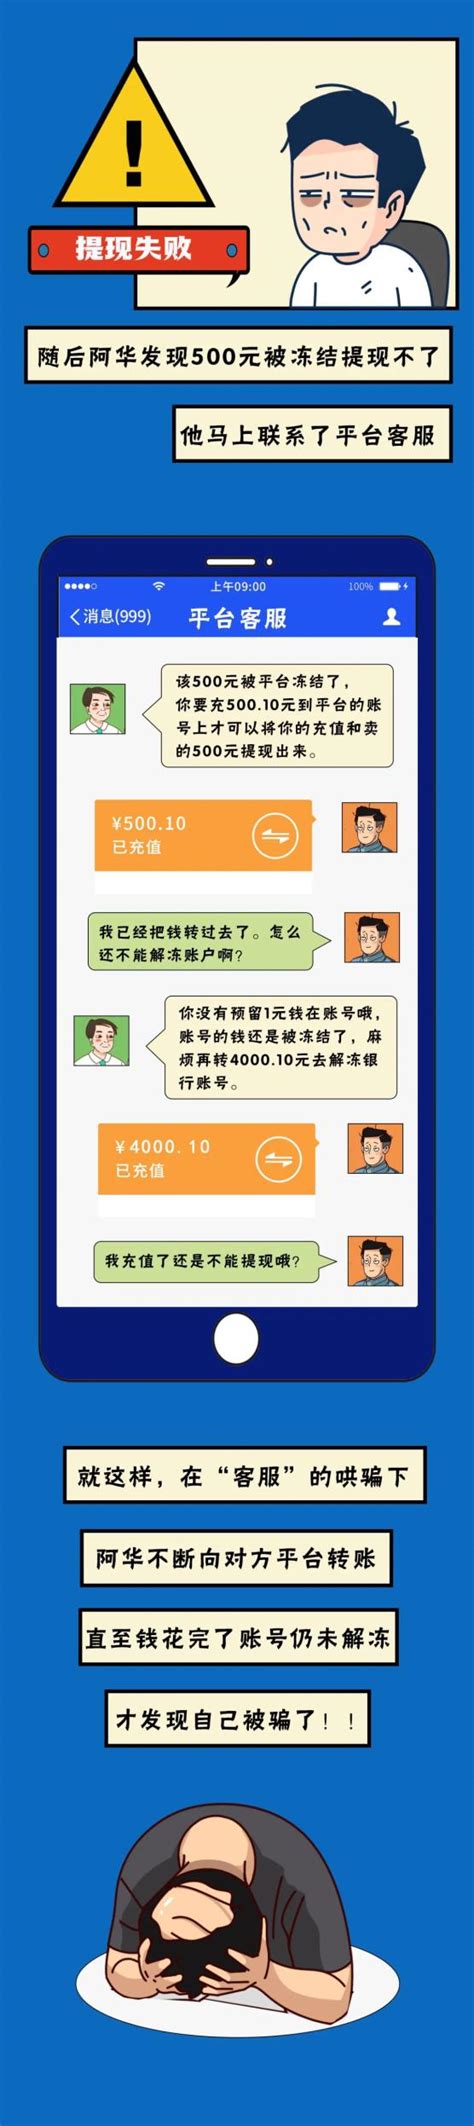 网友打算高价买下游戏账号？资深游戏玩家被骗6900元 - 周到上海